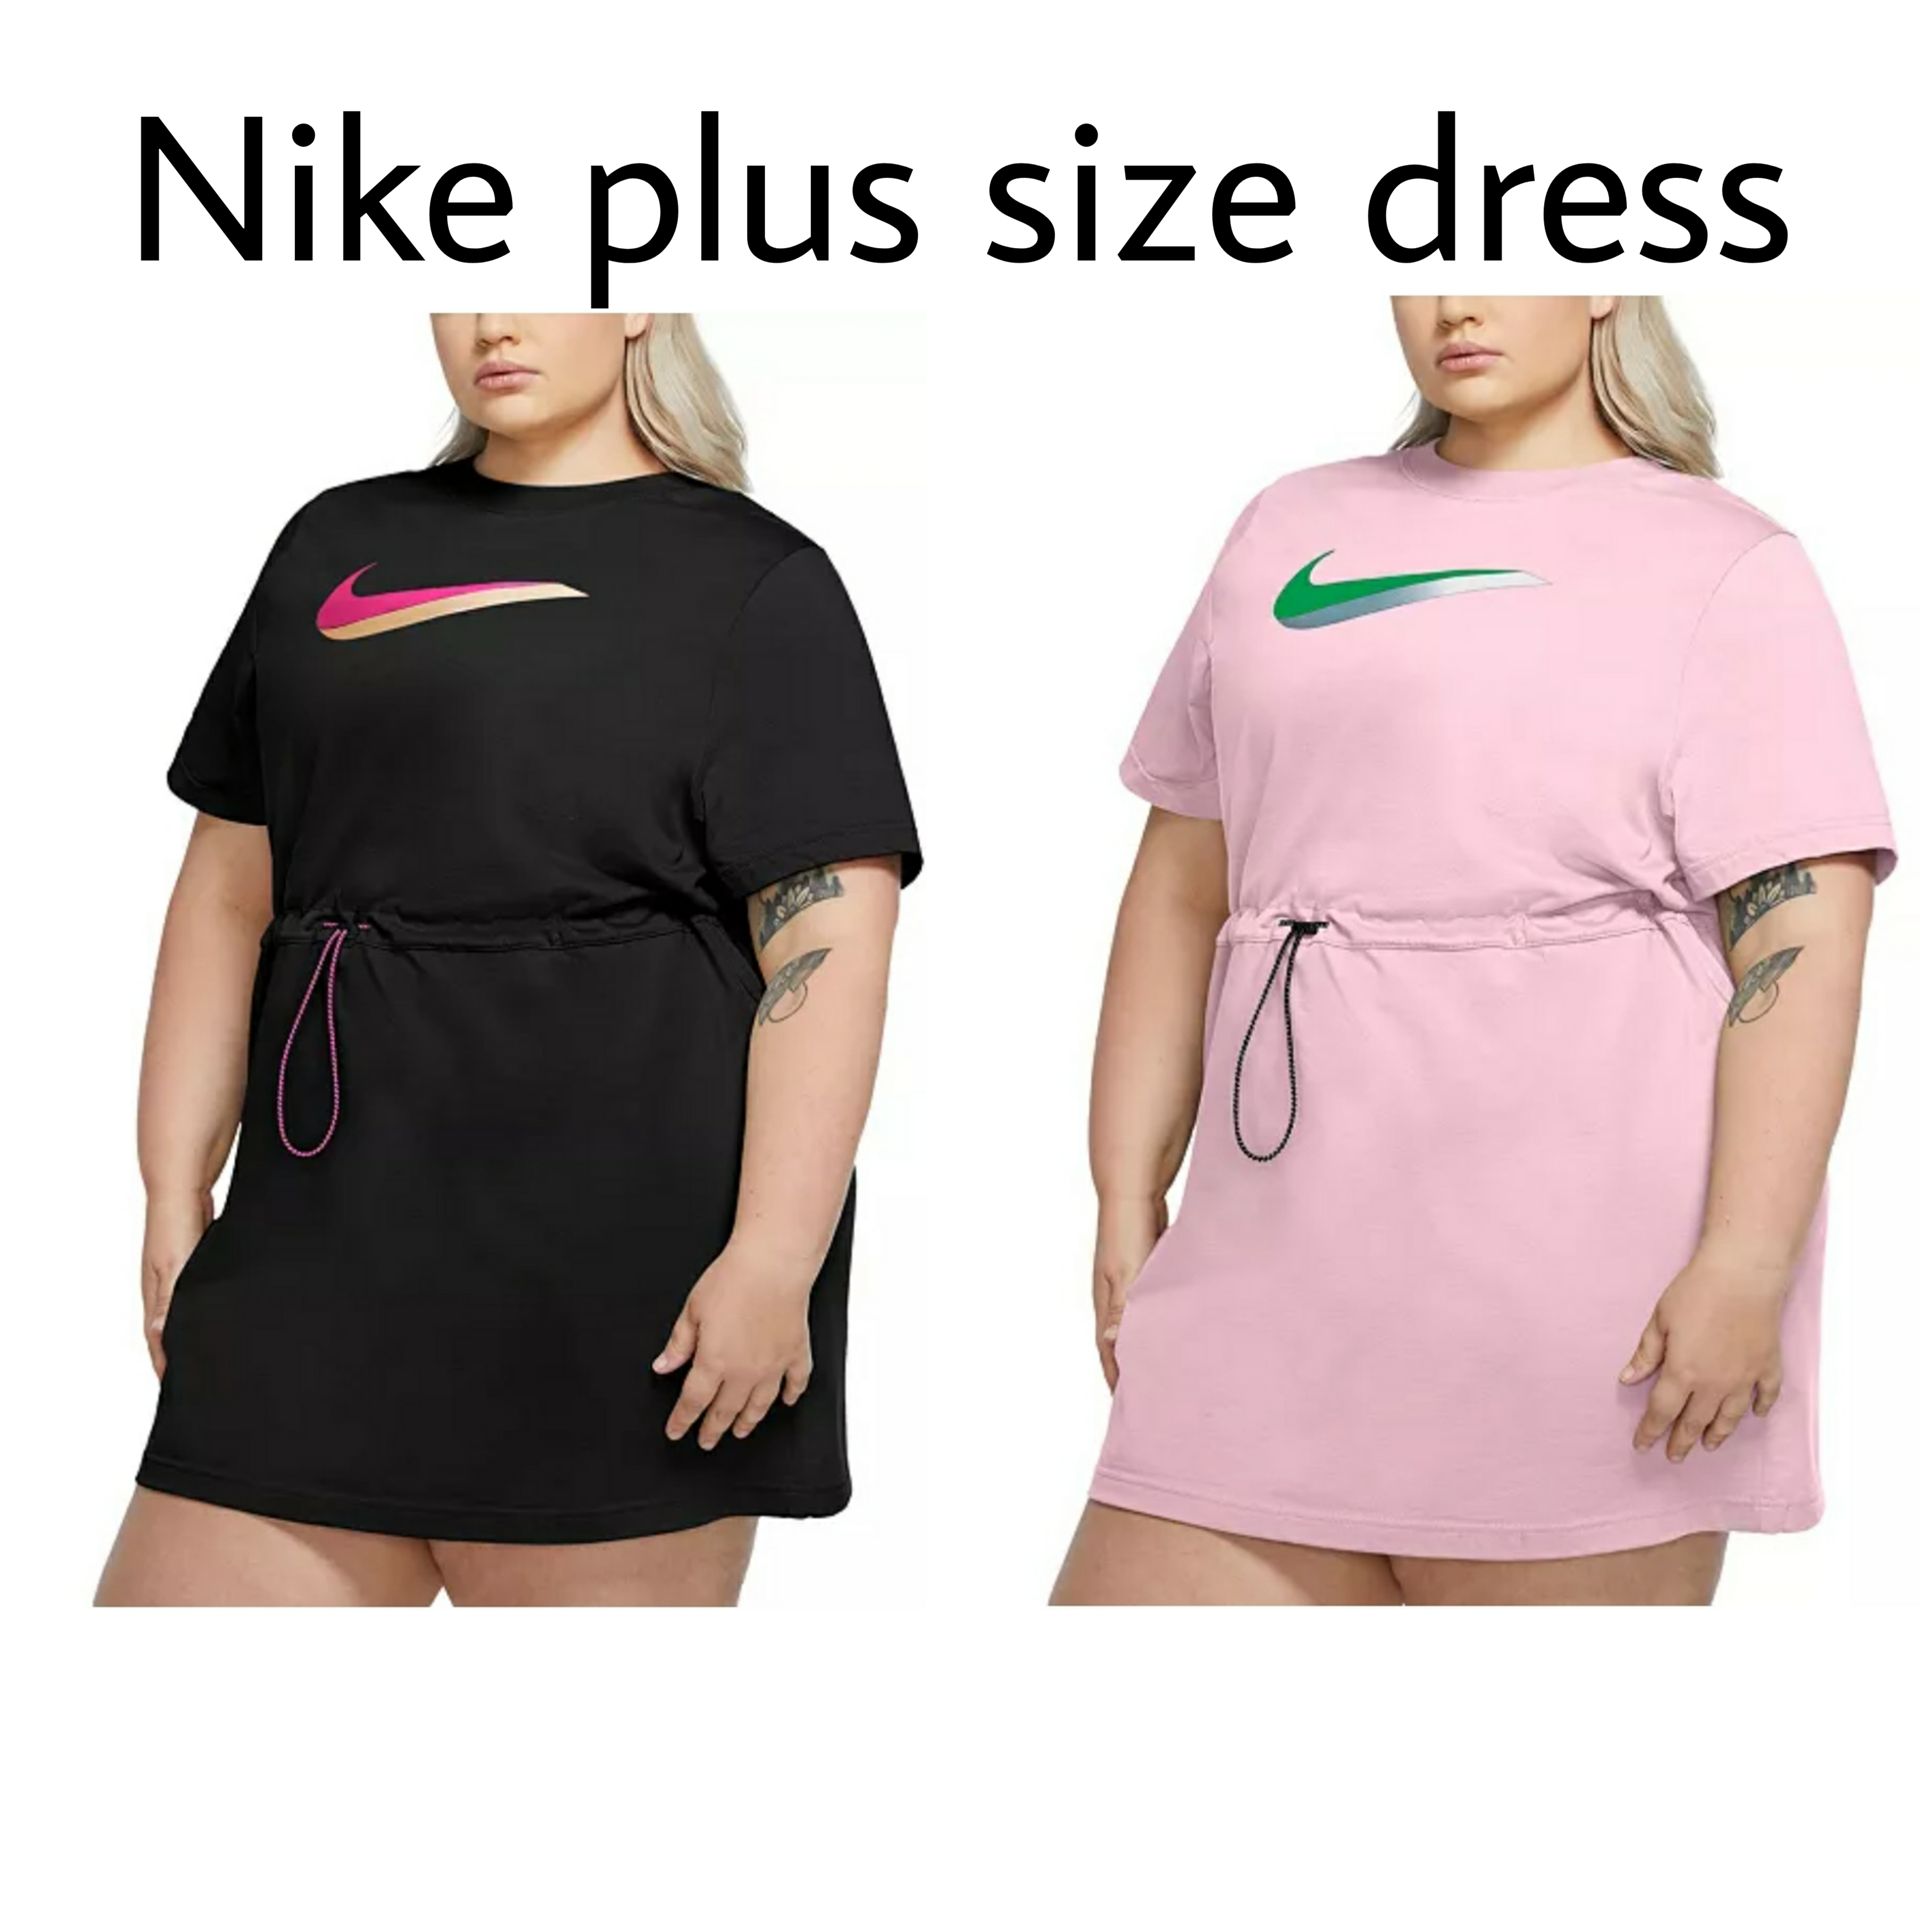 macys plus size nike clothing